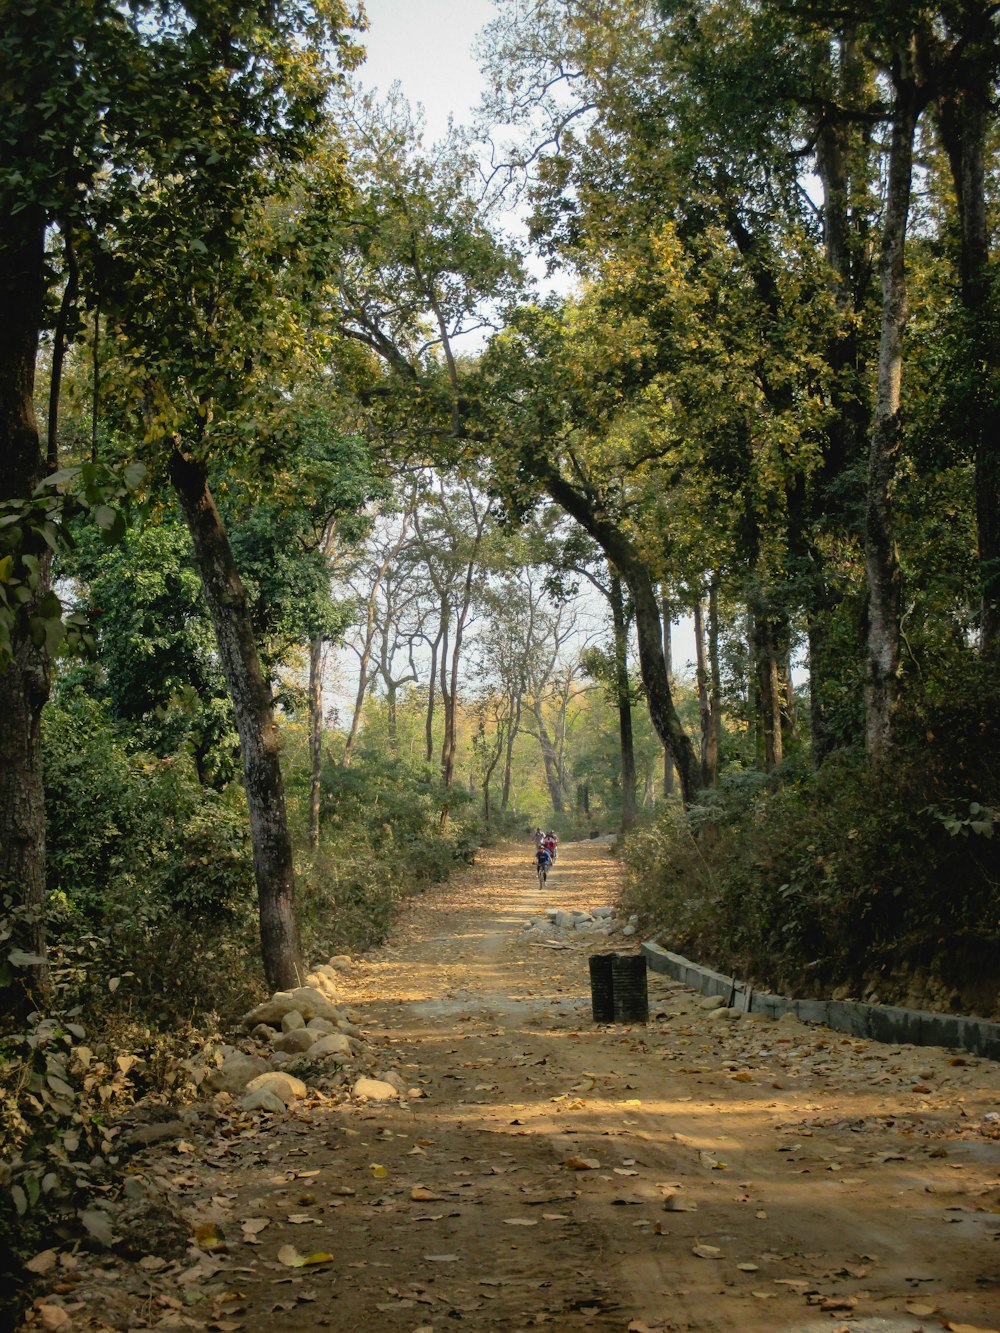 Una persona caminando por un camino de tierra rodeado de árboles